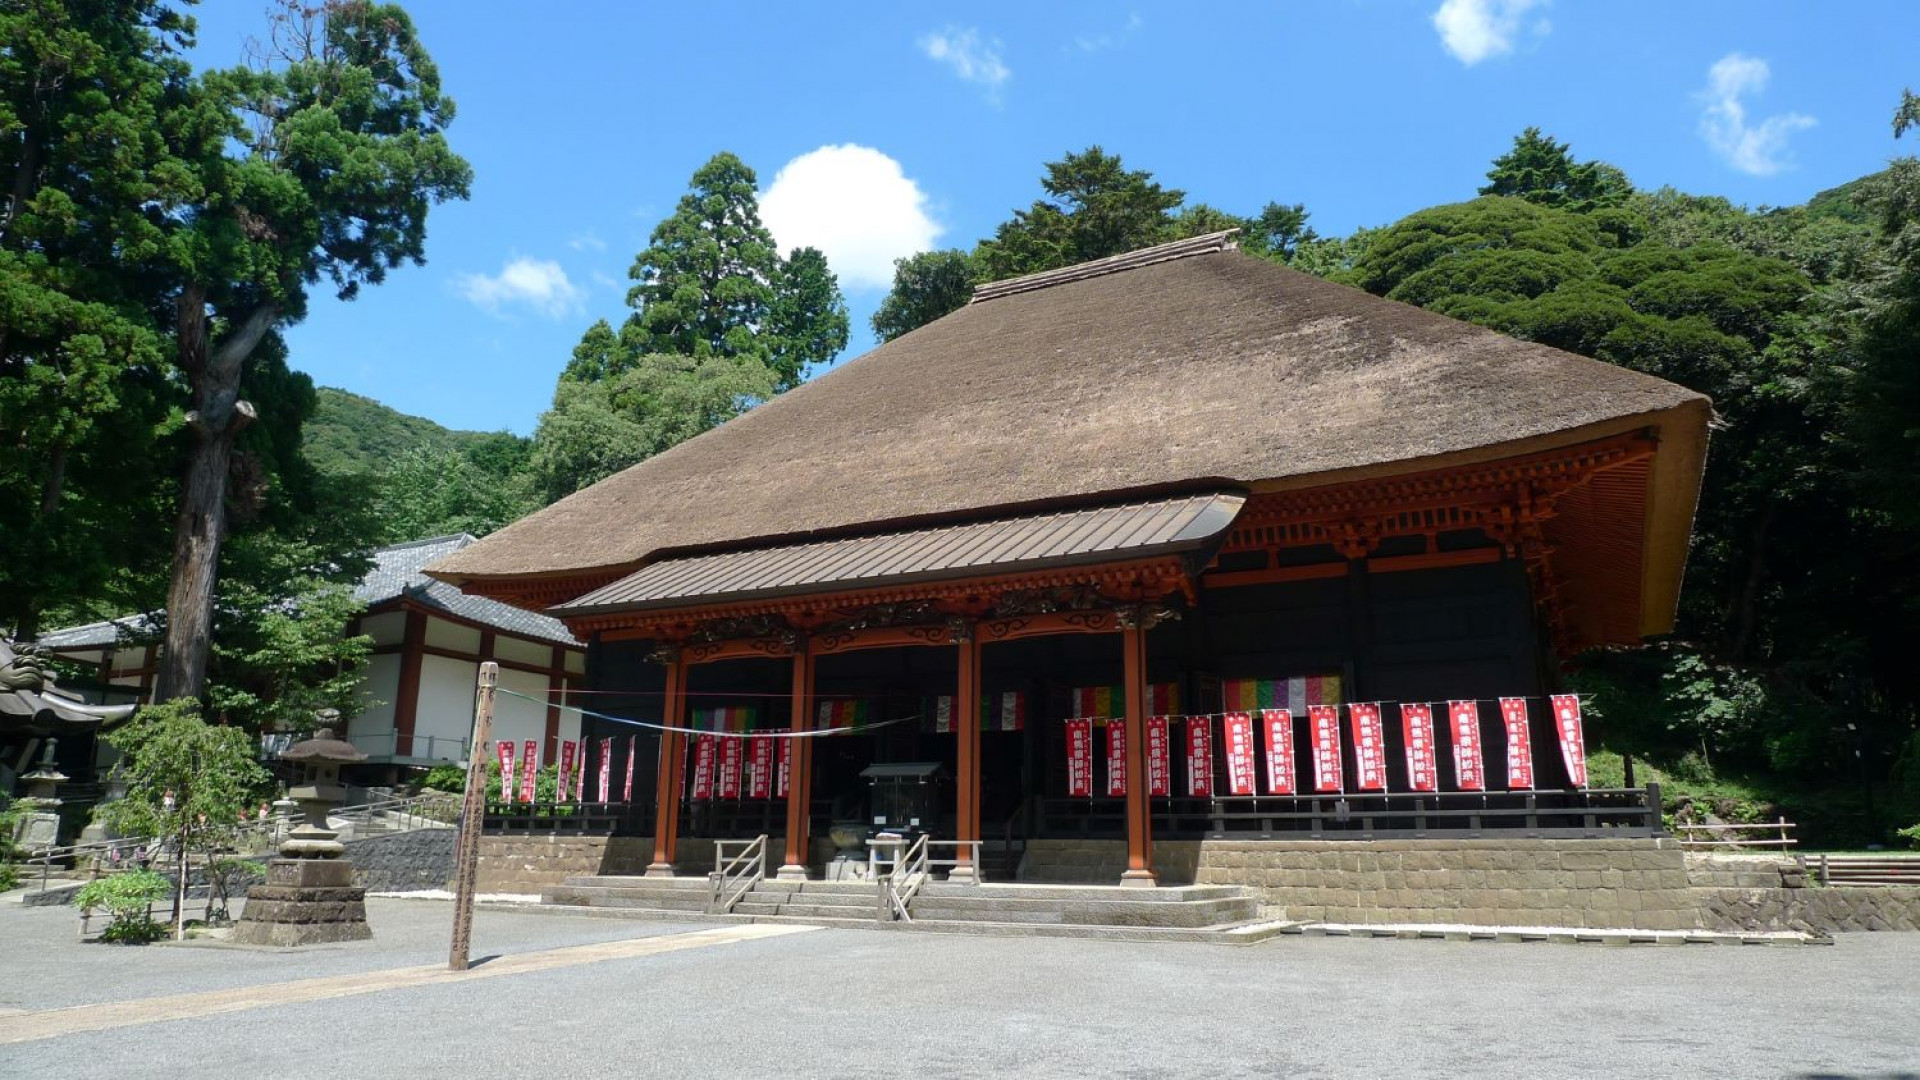 Hinata Yakushi Treasure Hall (Yakushi Nyorai, Ba Yakushi của Nhật Bản)